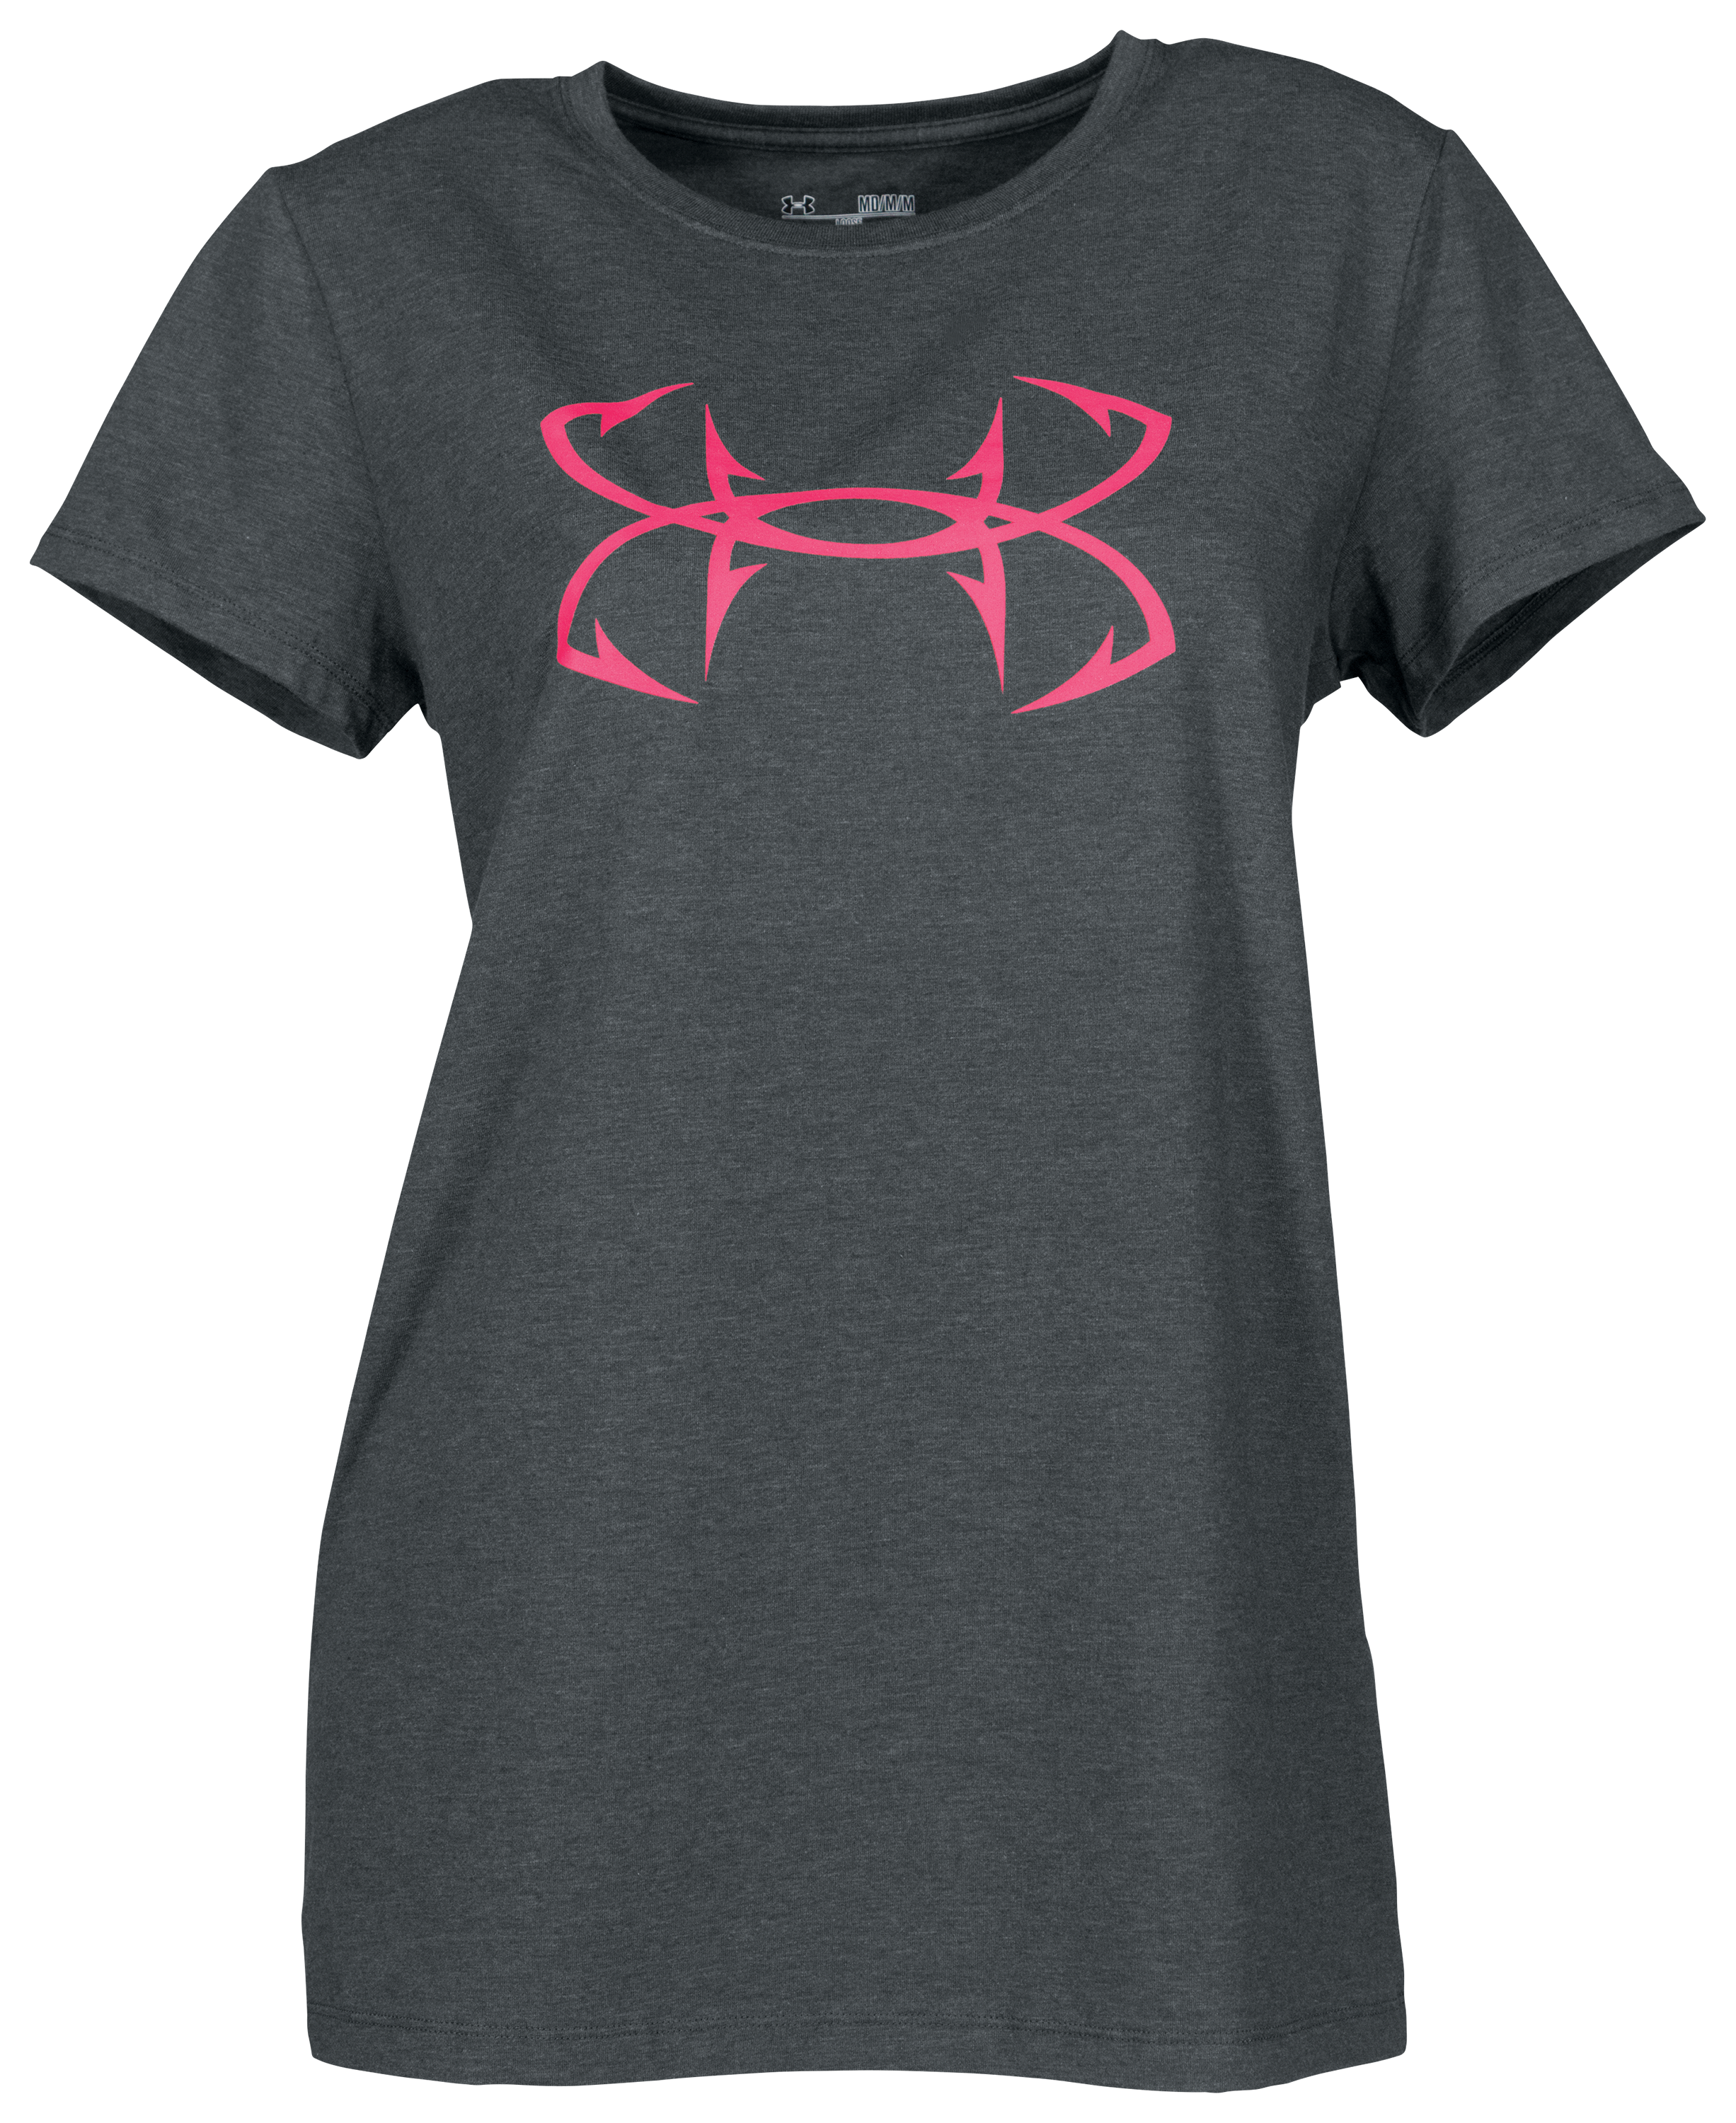 Under Armour Women's Fish Hook Logo T-Shirt - Blue, SM